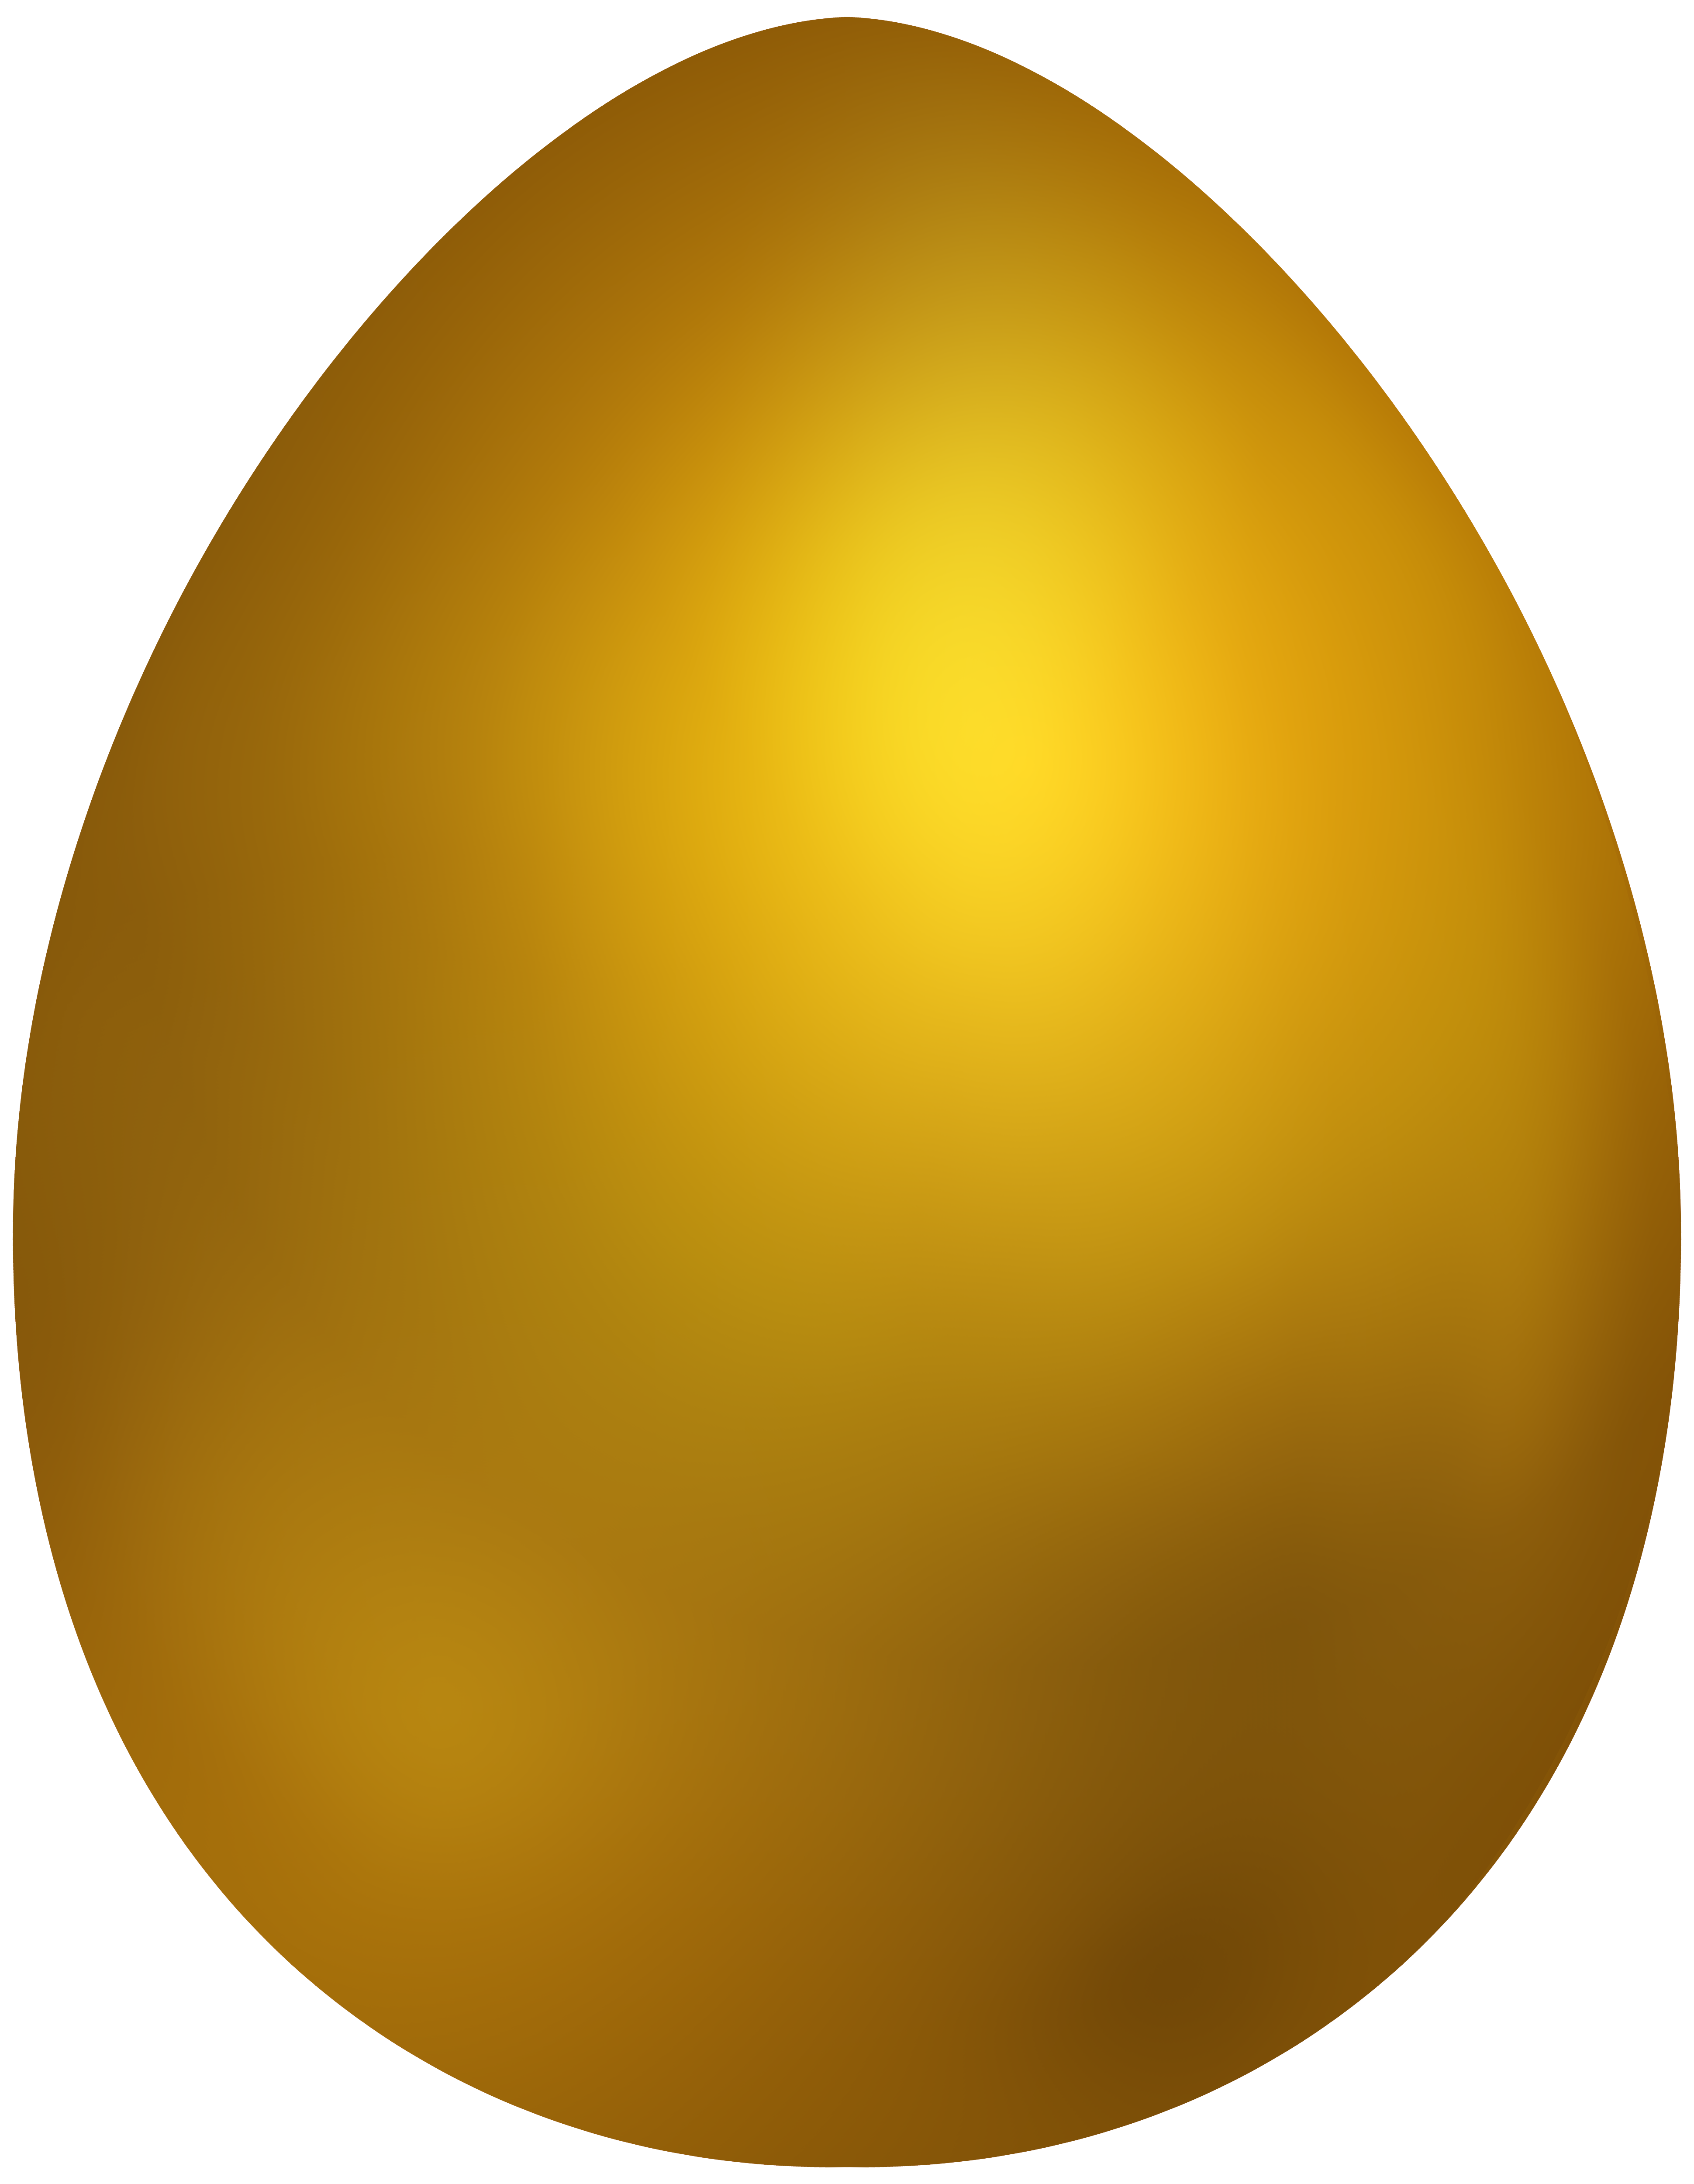 Golden Egg Clipart - Stunning Images of Golden Eggs